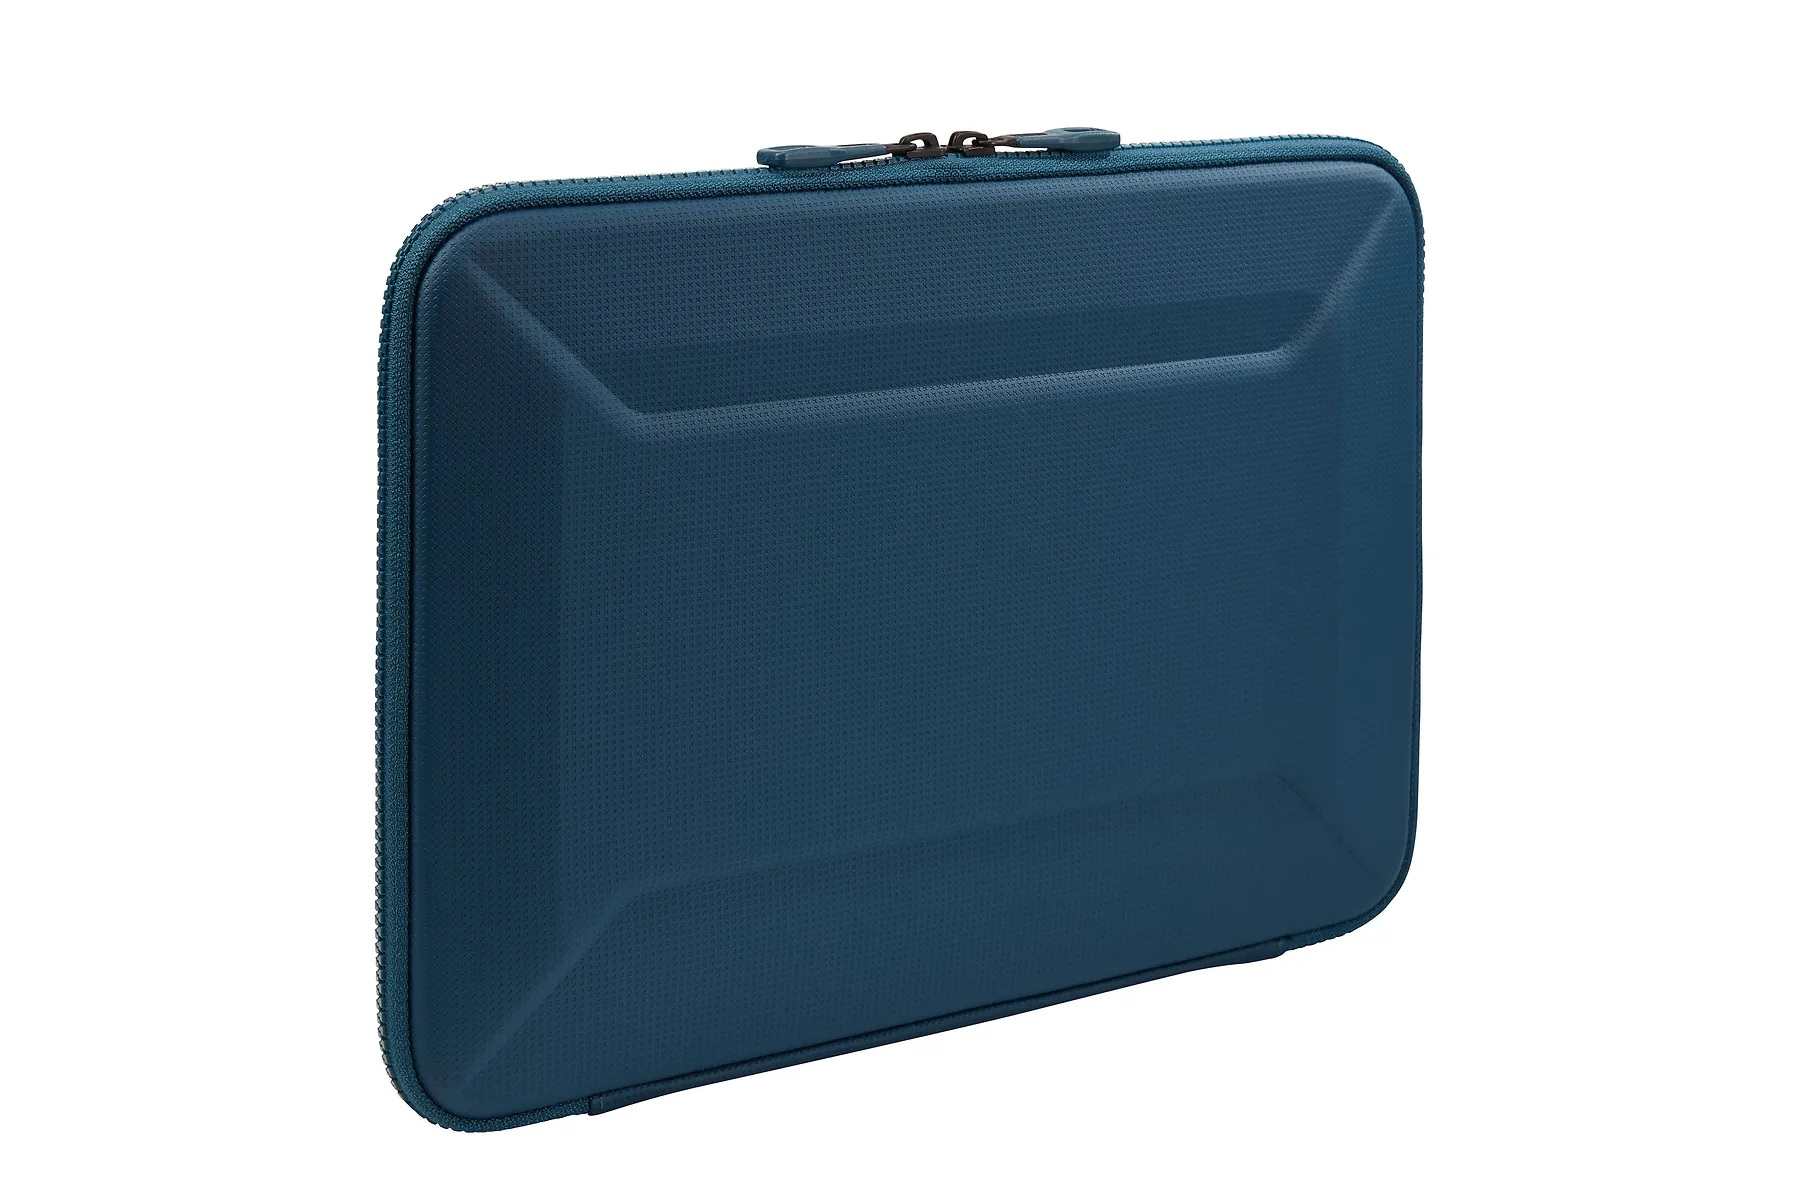 THULE 268202 Notebooktasche für Reisekoffer Polyurethan, Universal- blau